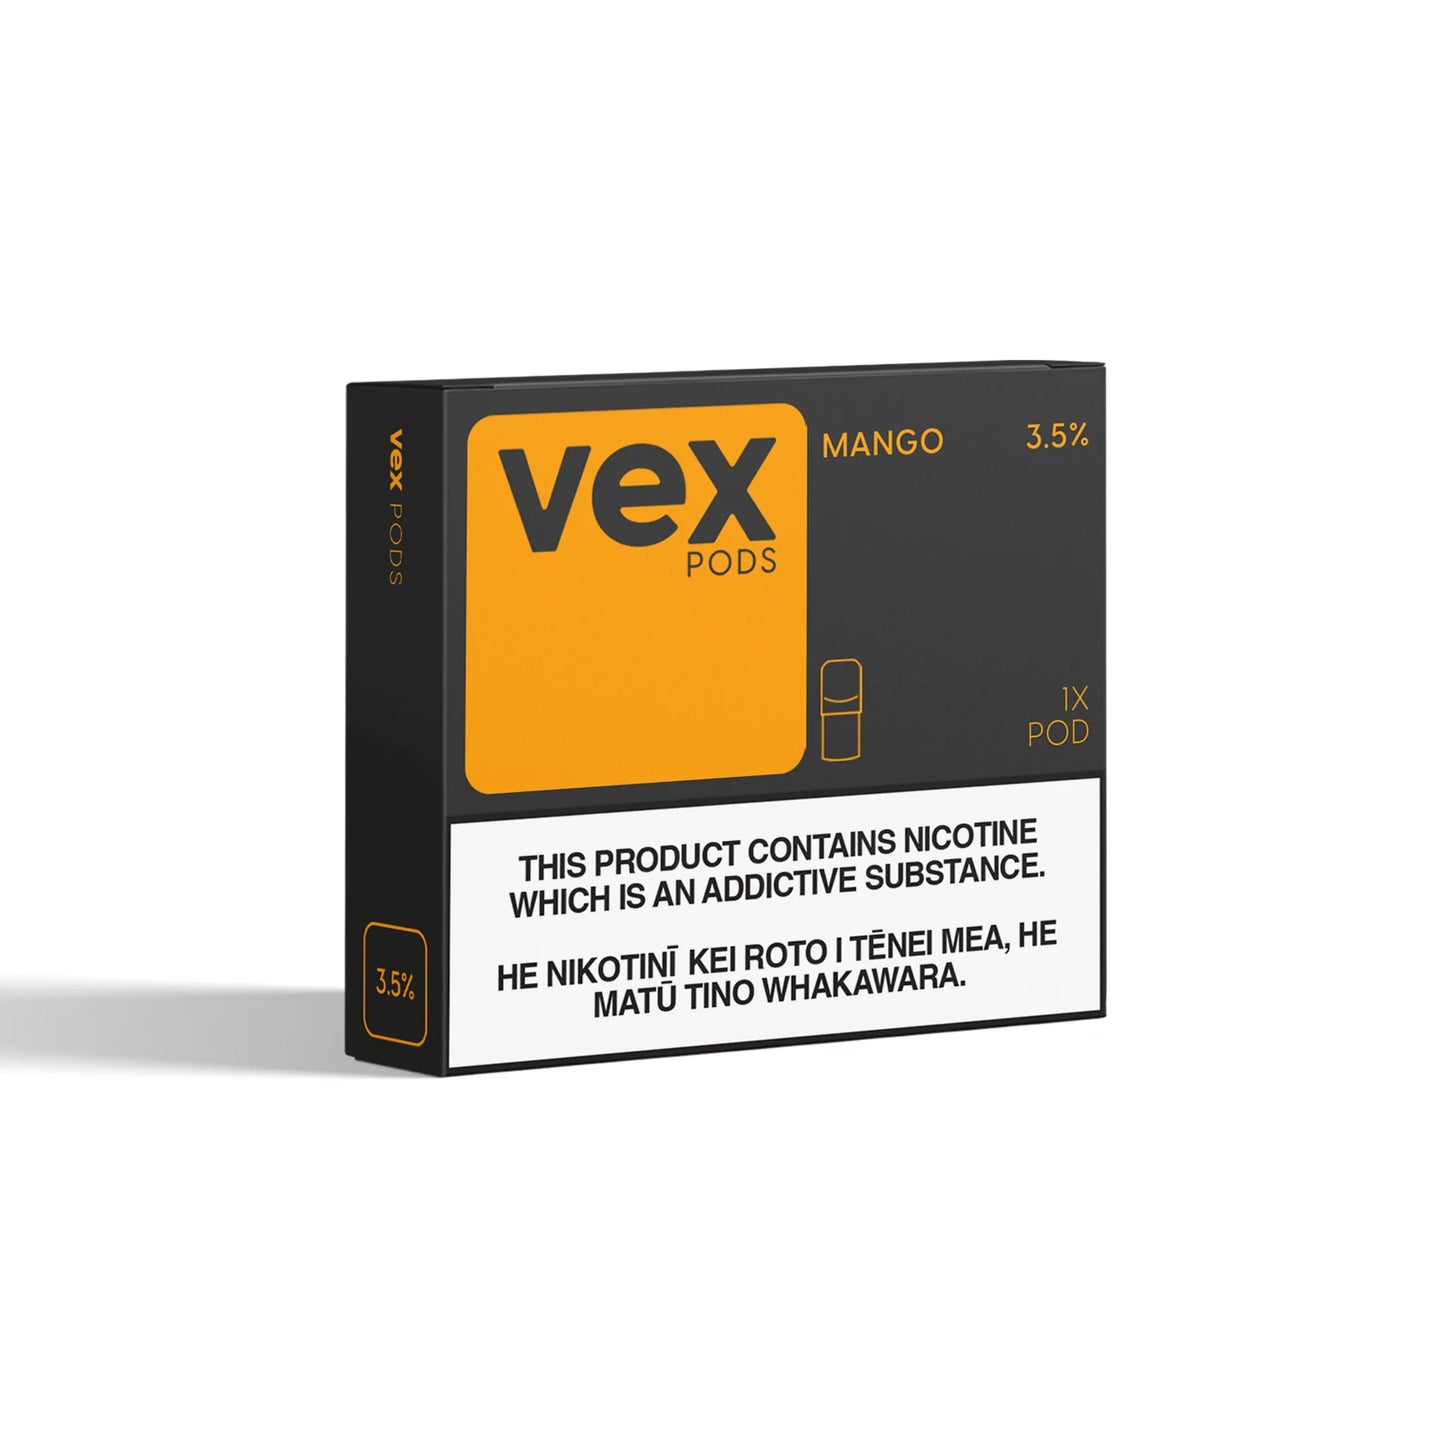 VEX - Mango 3.5% - 2020 Vapes